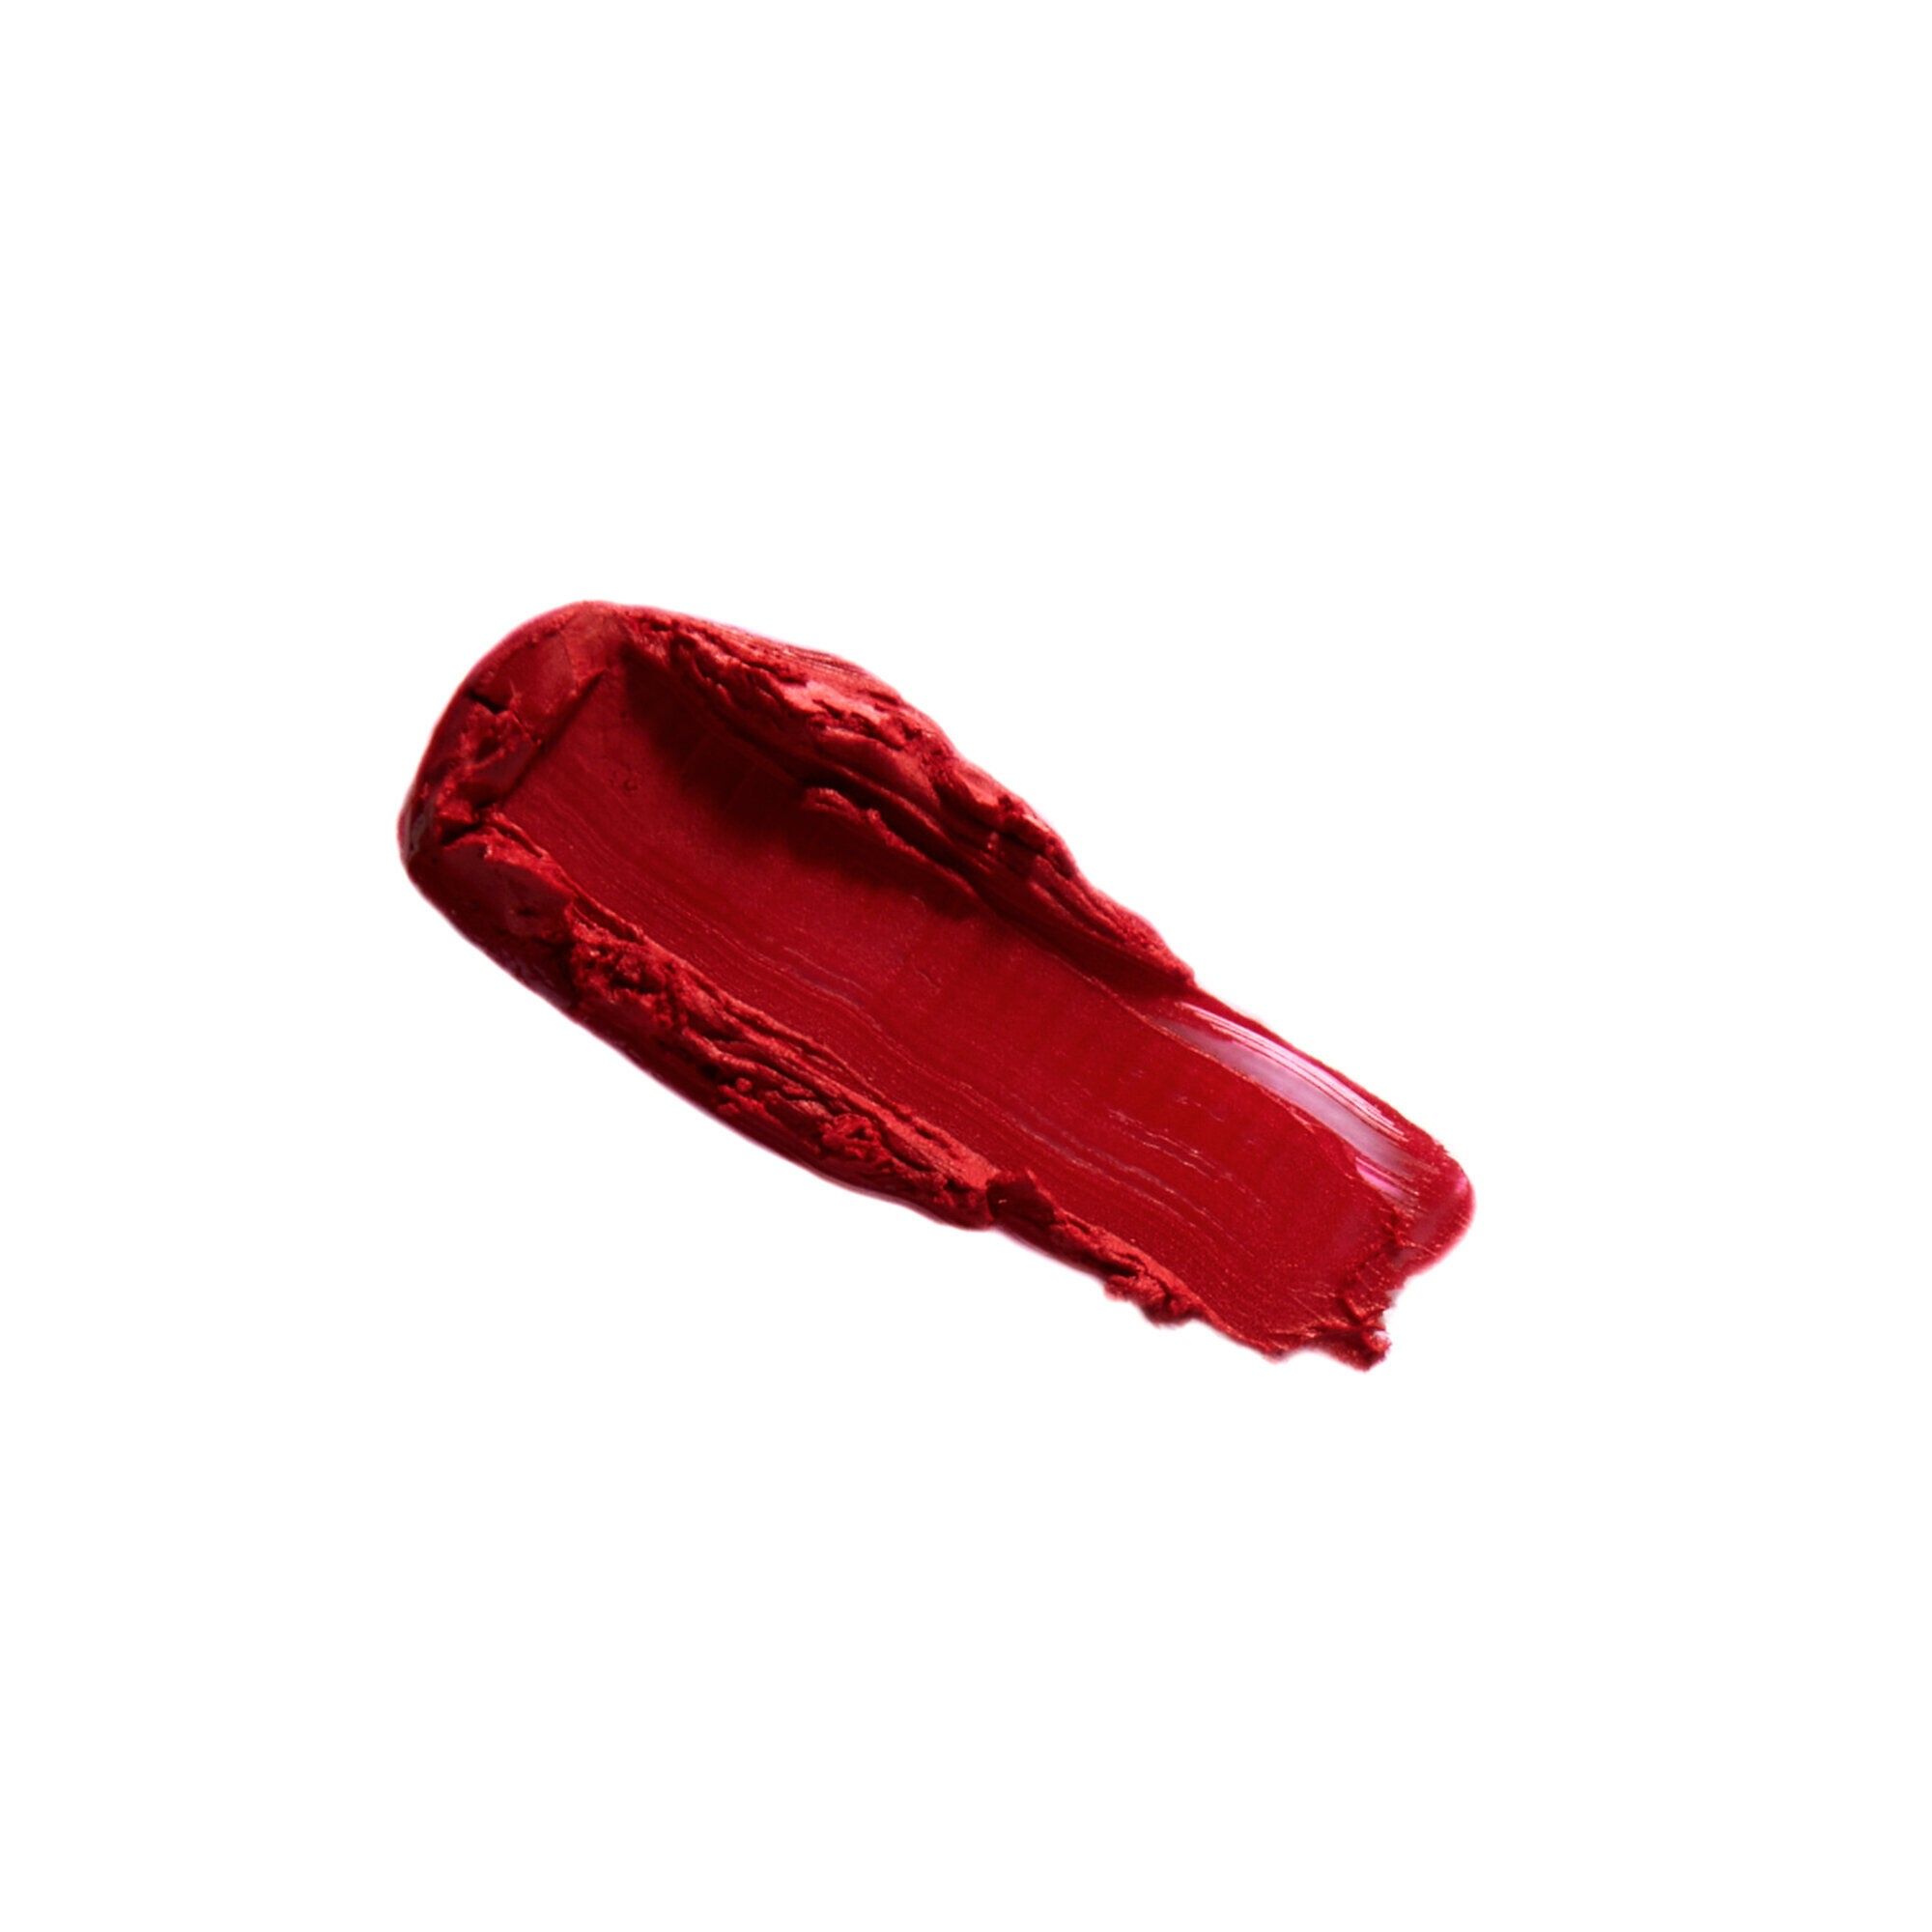 Rouge à Lèvres & Crayon à Lèvres - Revolution Pro x Marilyn Monroe - Lip Set